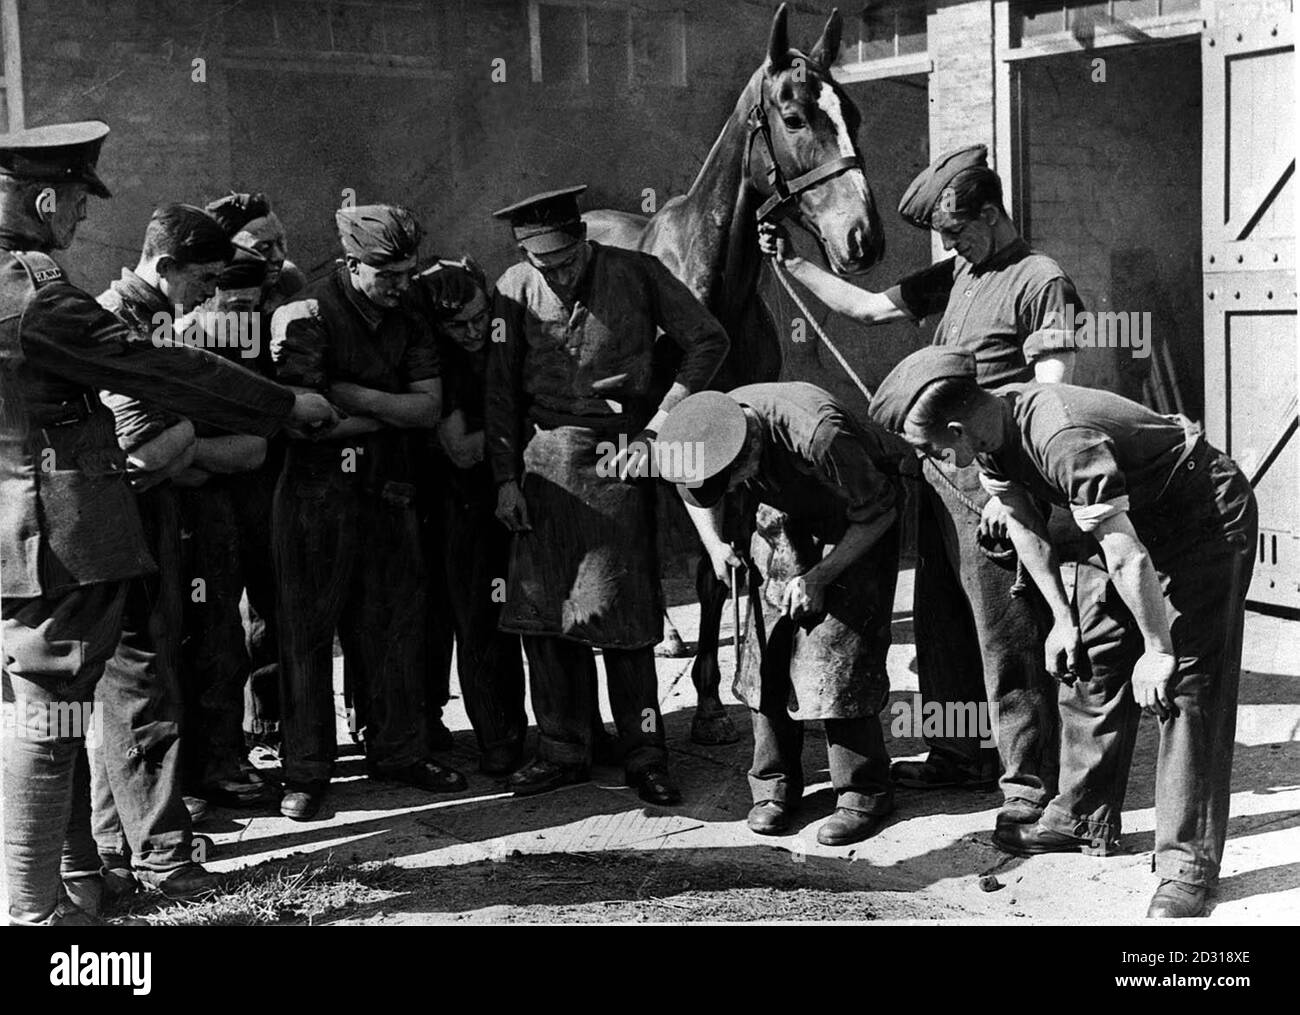 ARMÉE BRITANNIQUE c1939: Recrues de l'unité de transport de chevaux attachée au corps de service de l'armée royale apprenant à monter un cheval. Photo de la collection PA de la Seconde Guerre mondiale. Banque D'Images